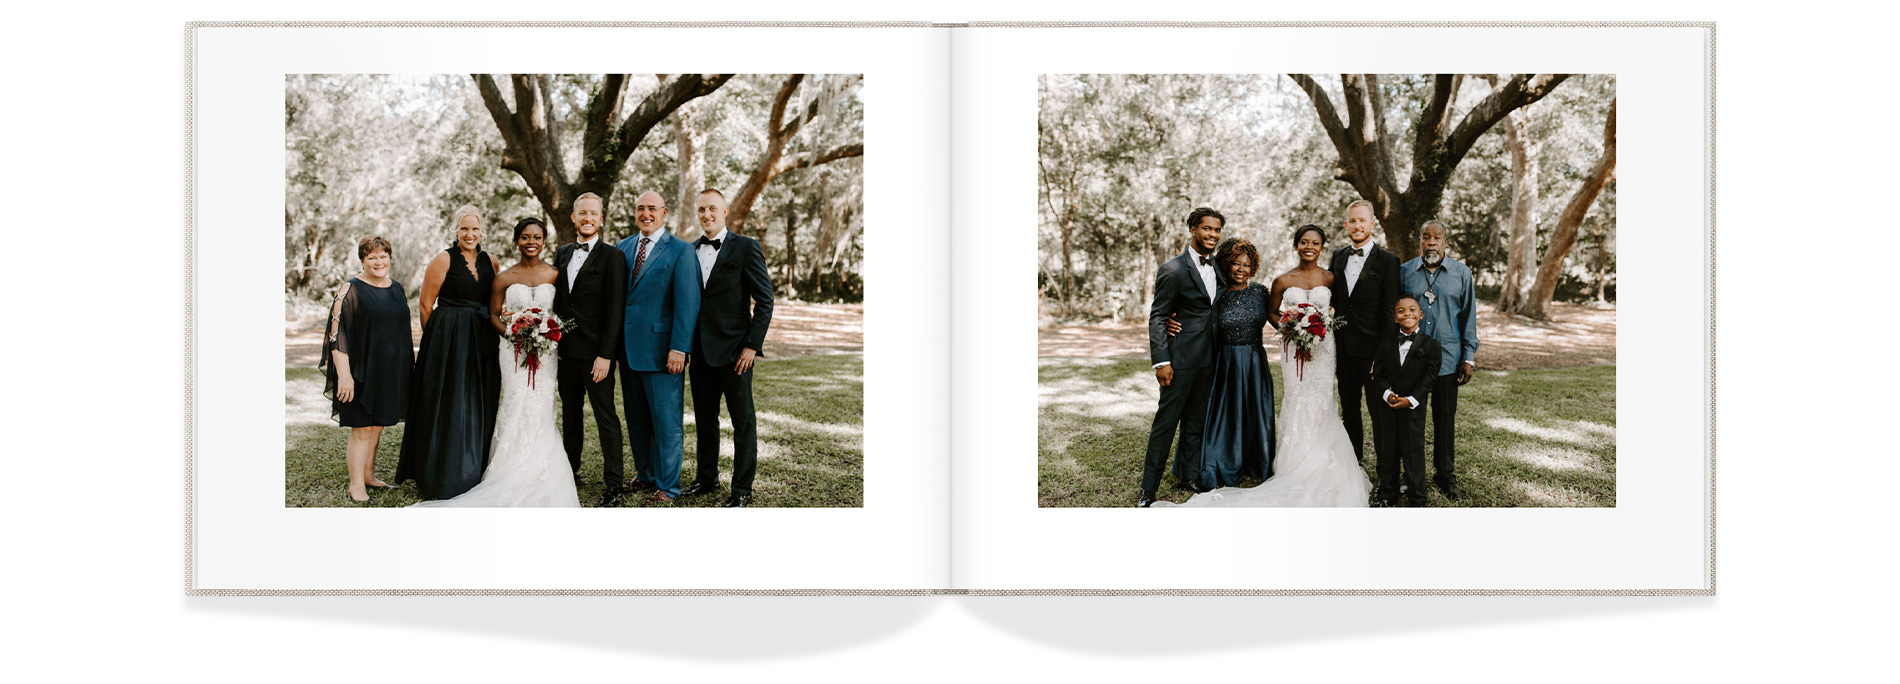 Fotos formales de grupo familiar en la boda.